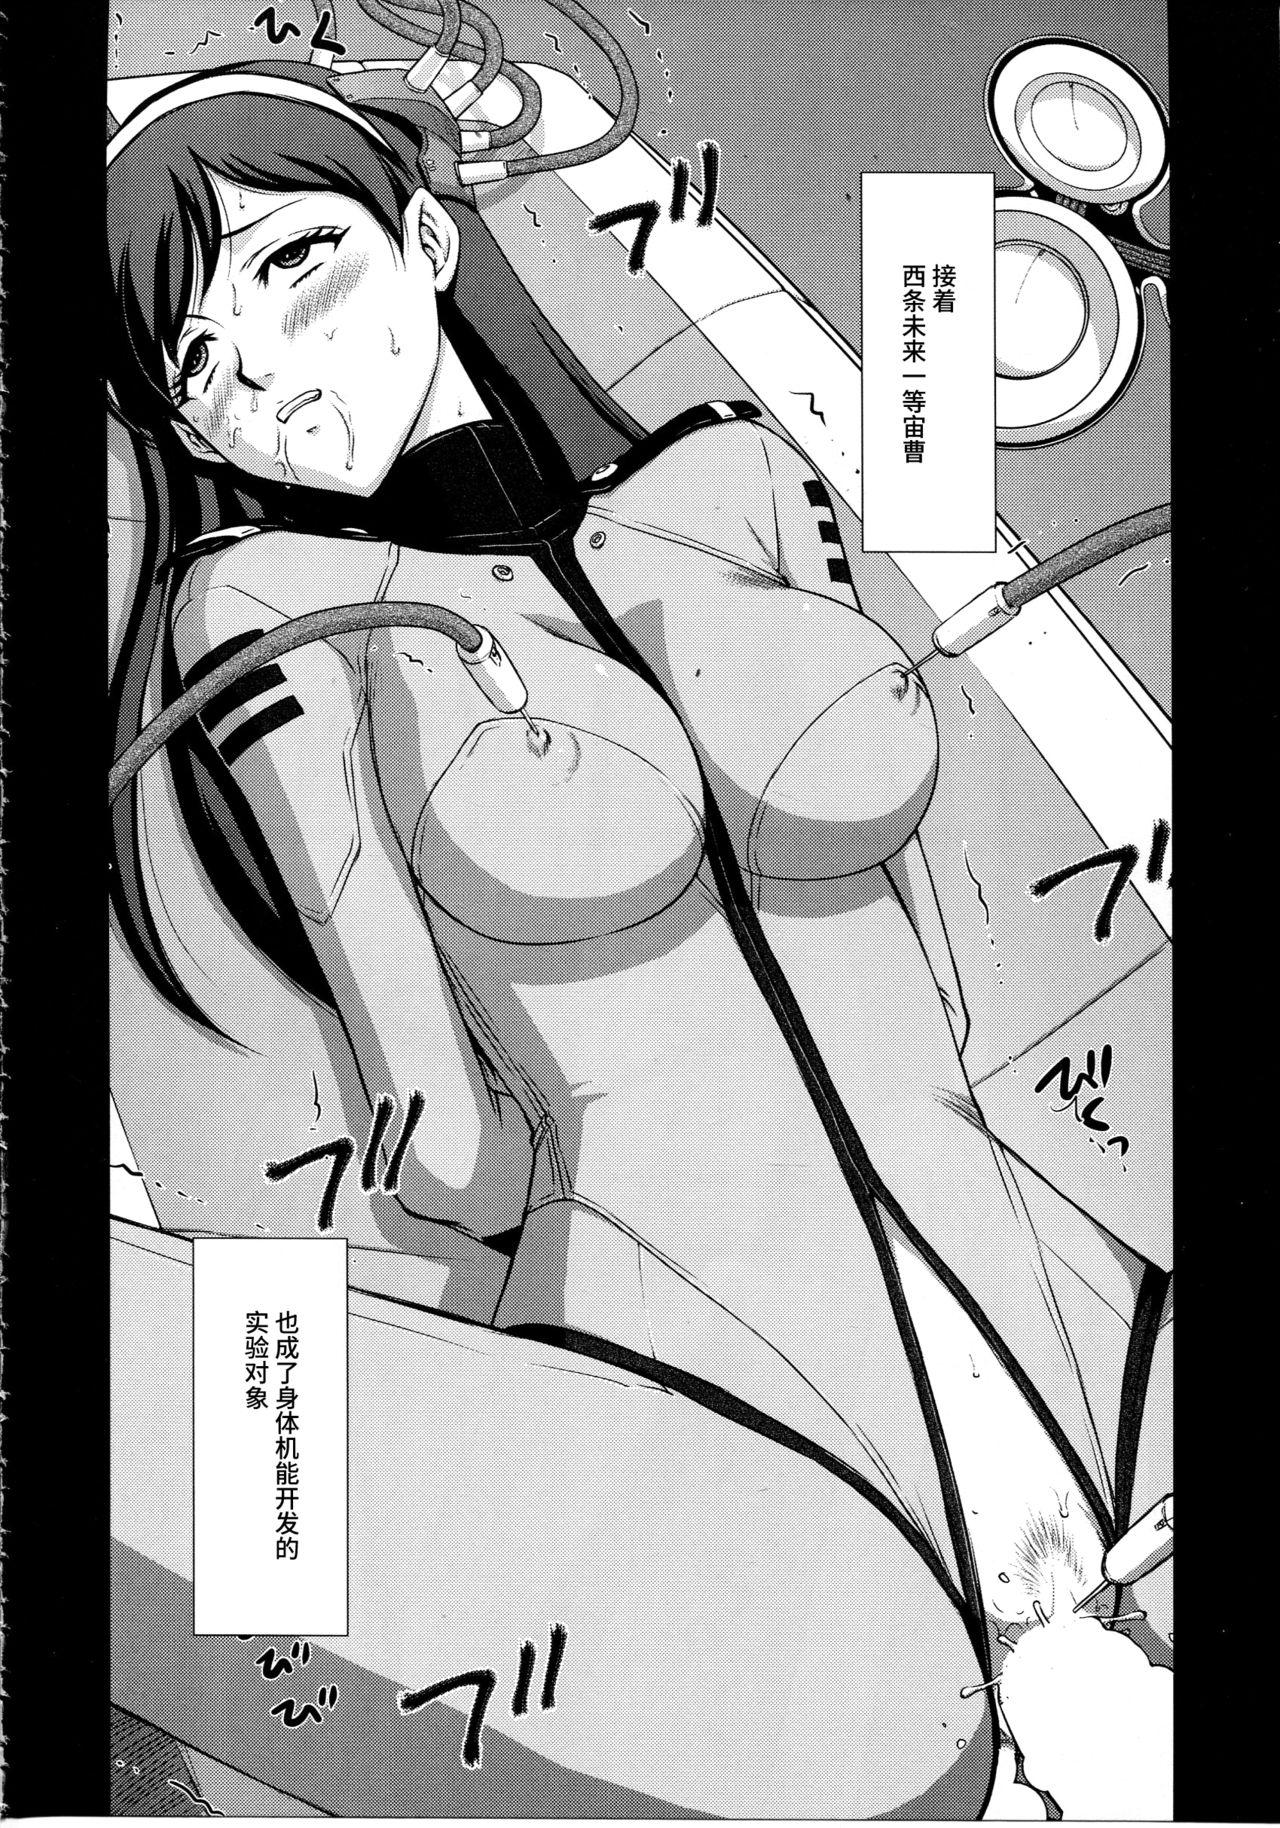 Scissoring Yuki no Shizuku - Space battleship yamato 2199 Unshaved - Page 7